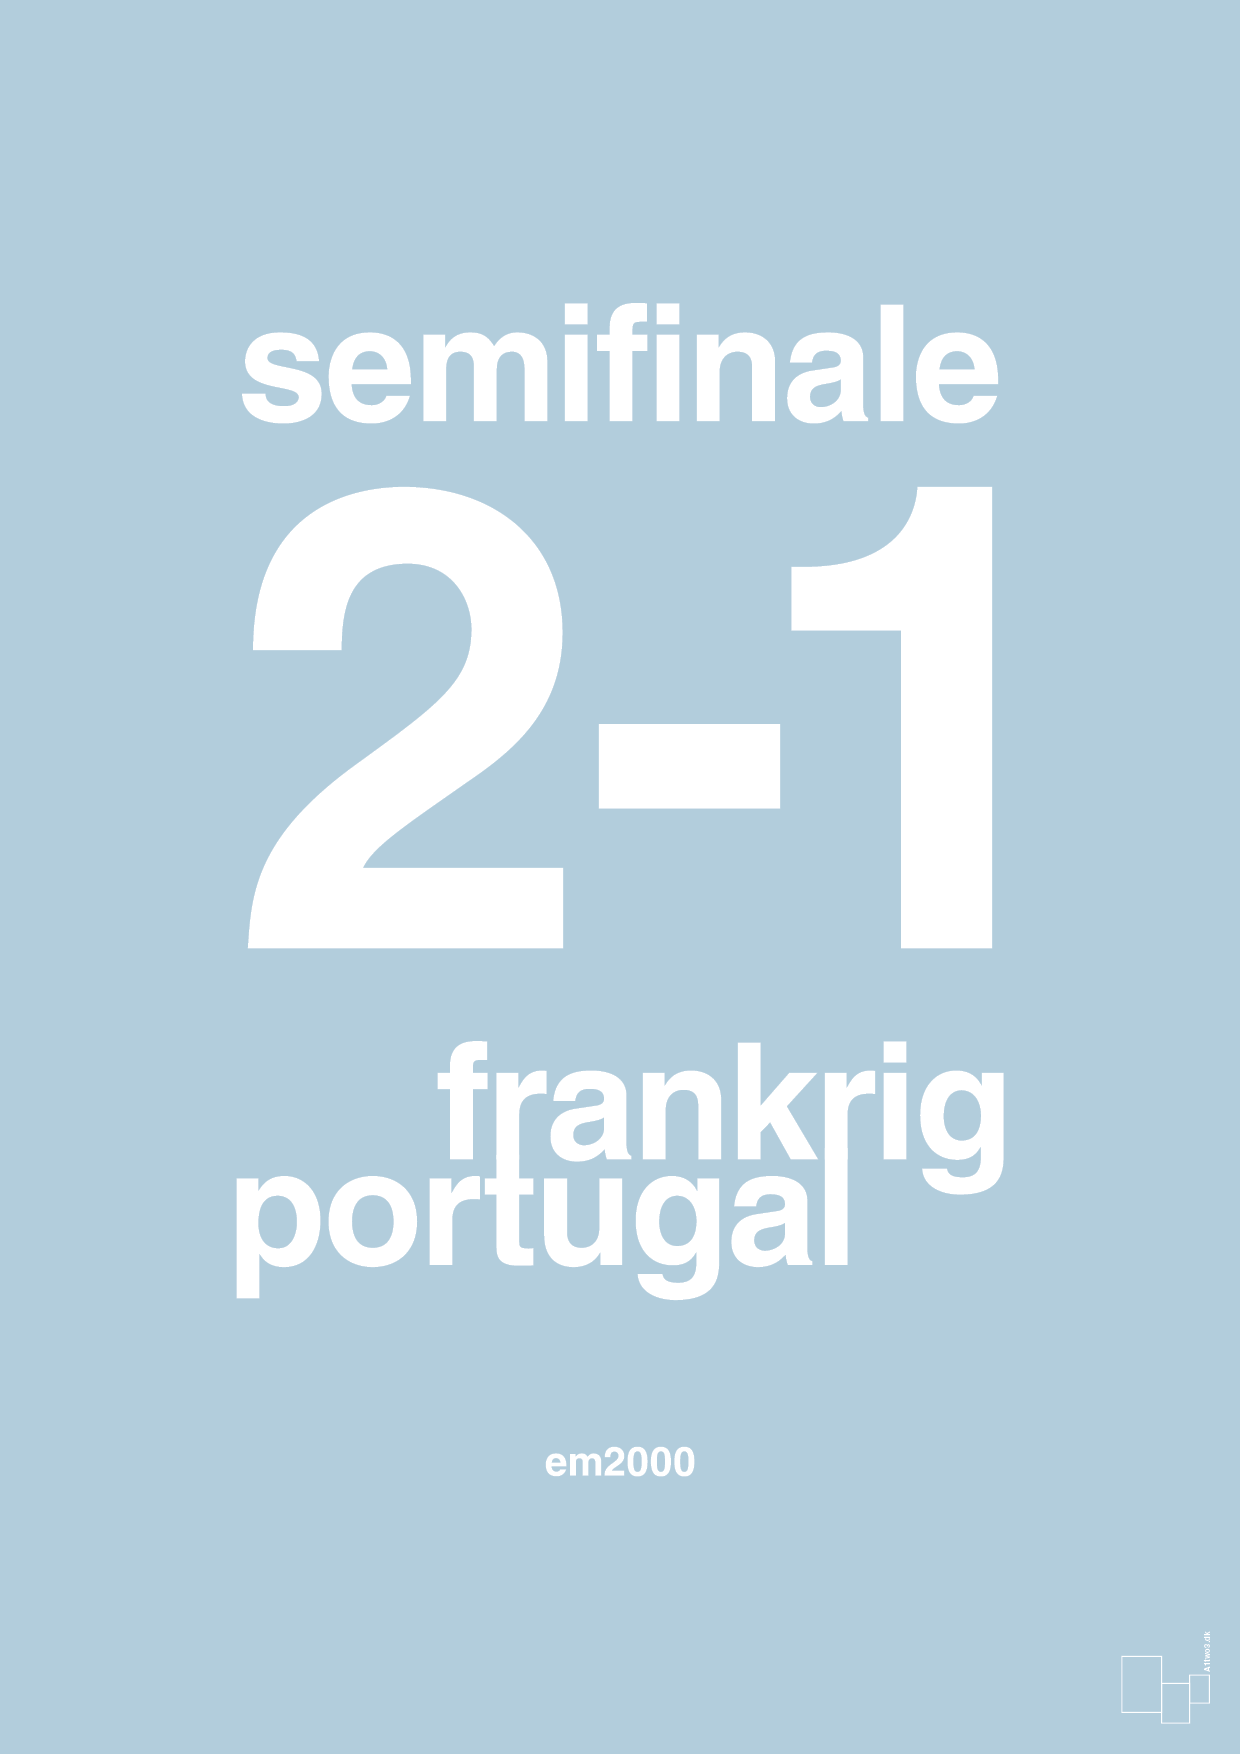 resultat for fodbold em semifinale B i 2000 - Plakat med Sport & Fritid i Heavenly Blue